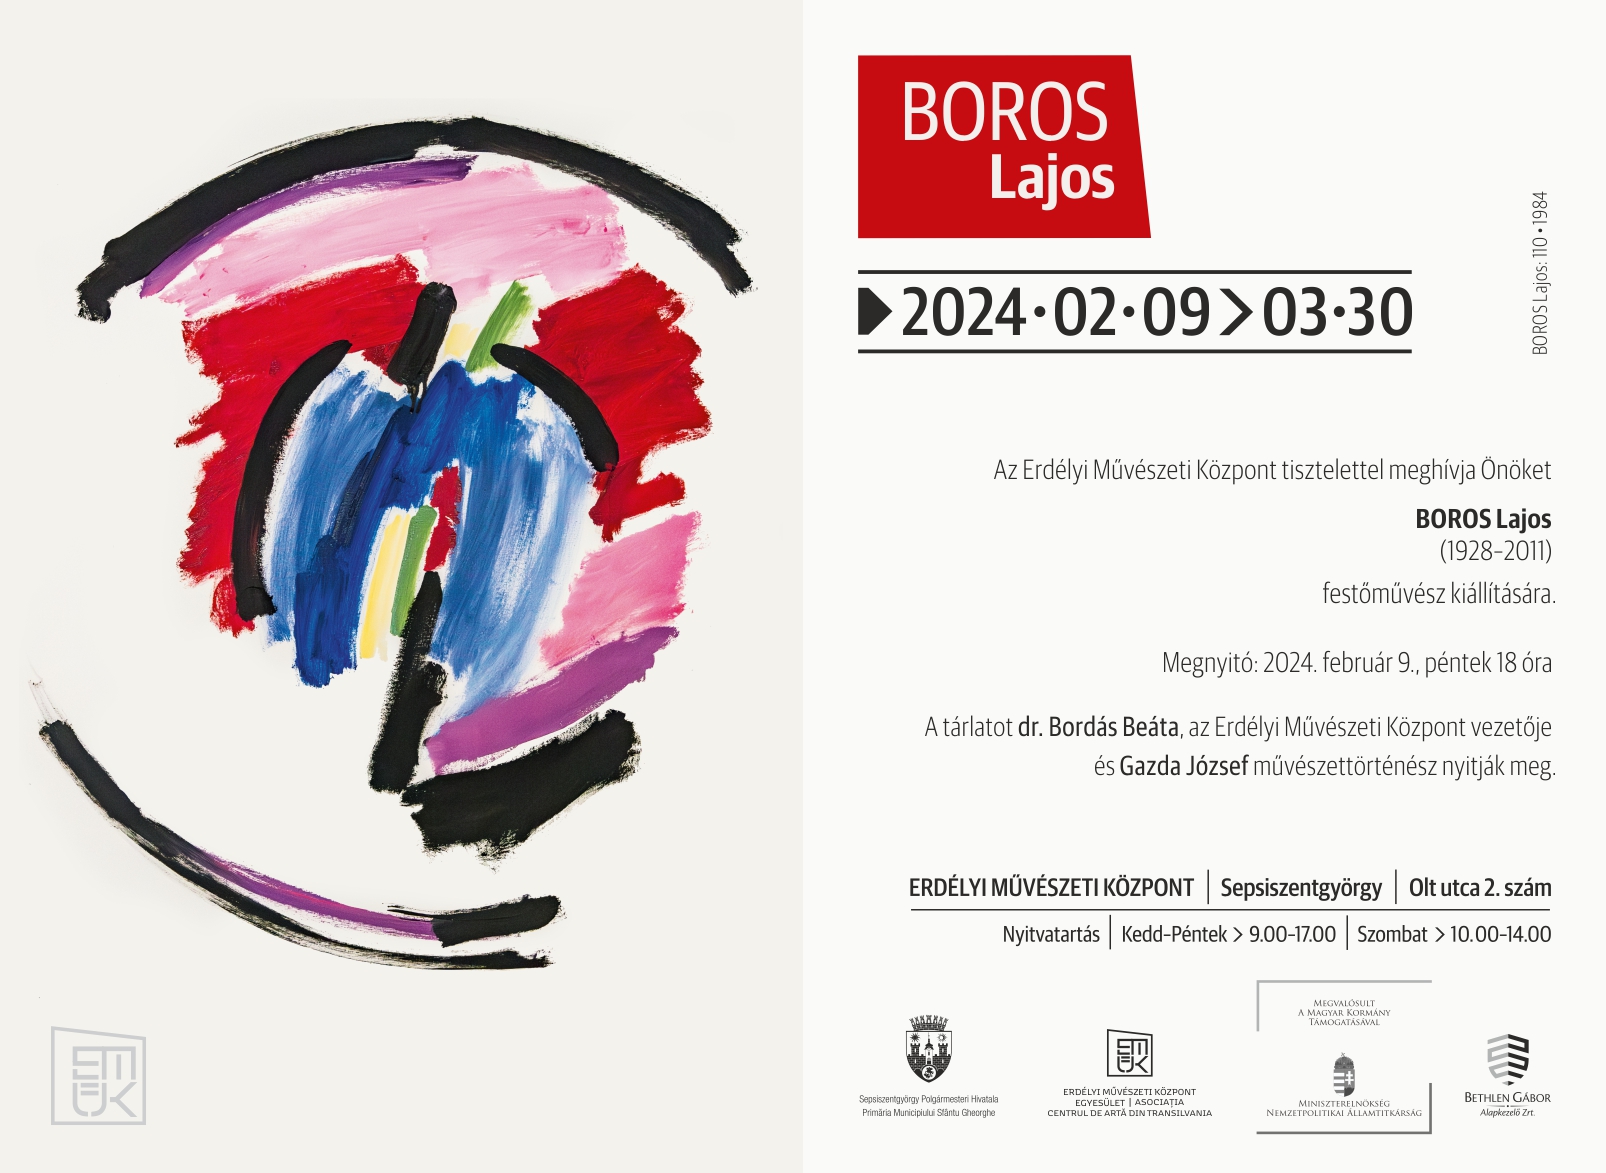 Expoziția pictorului Lajos BOROS, un prim reprezentant al picturii abstracte în Transilvania